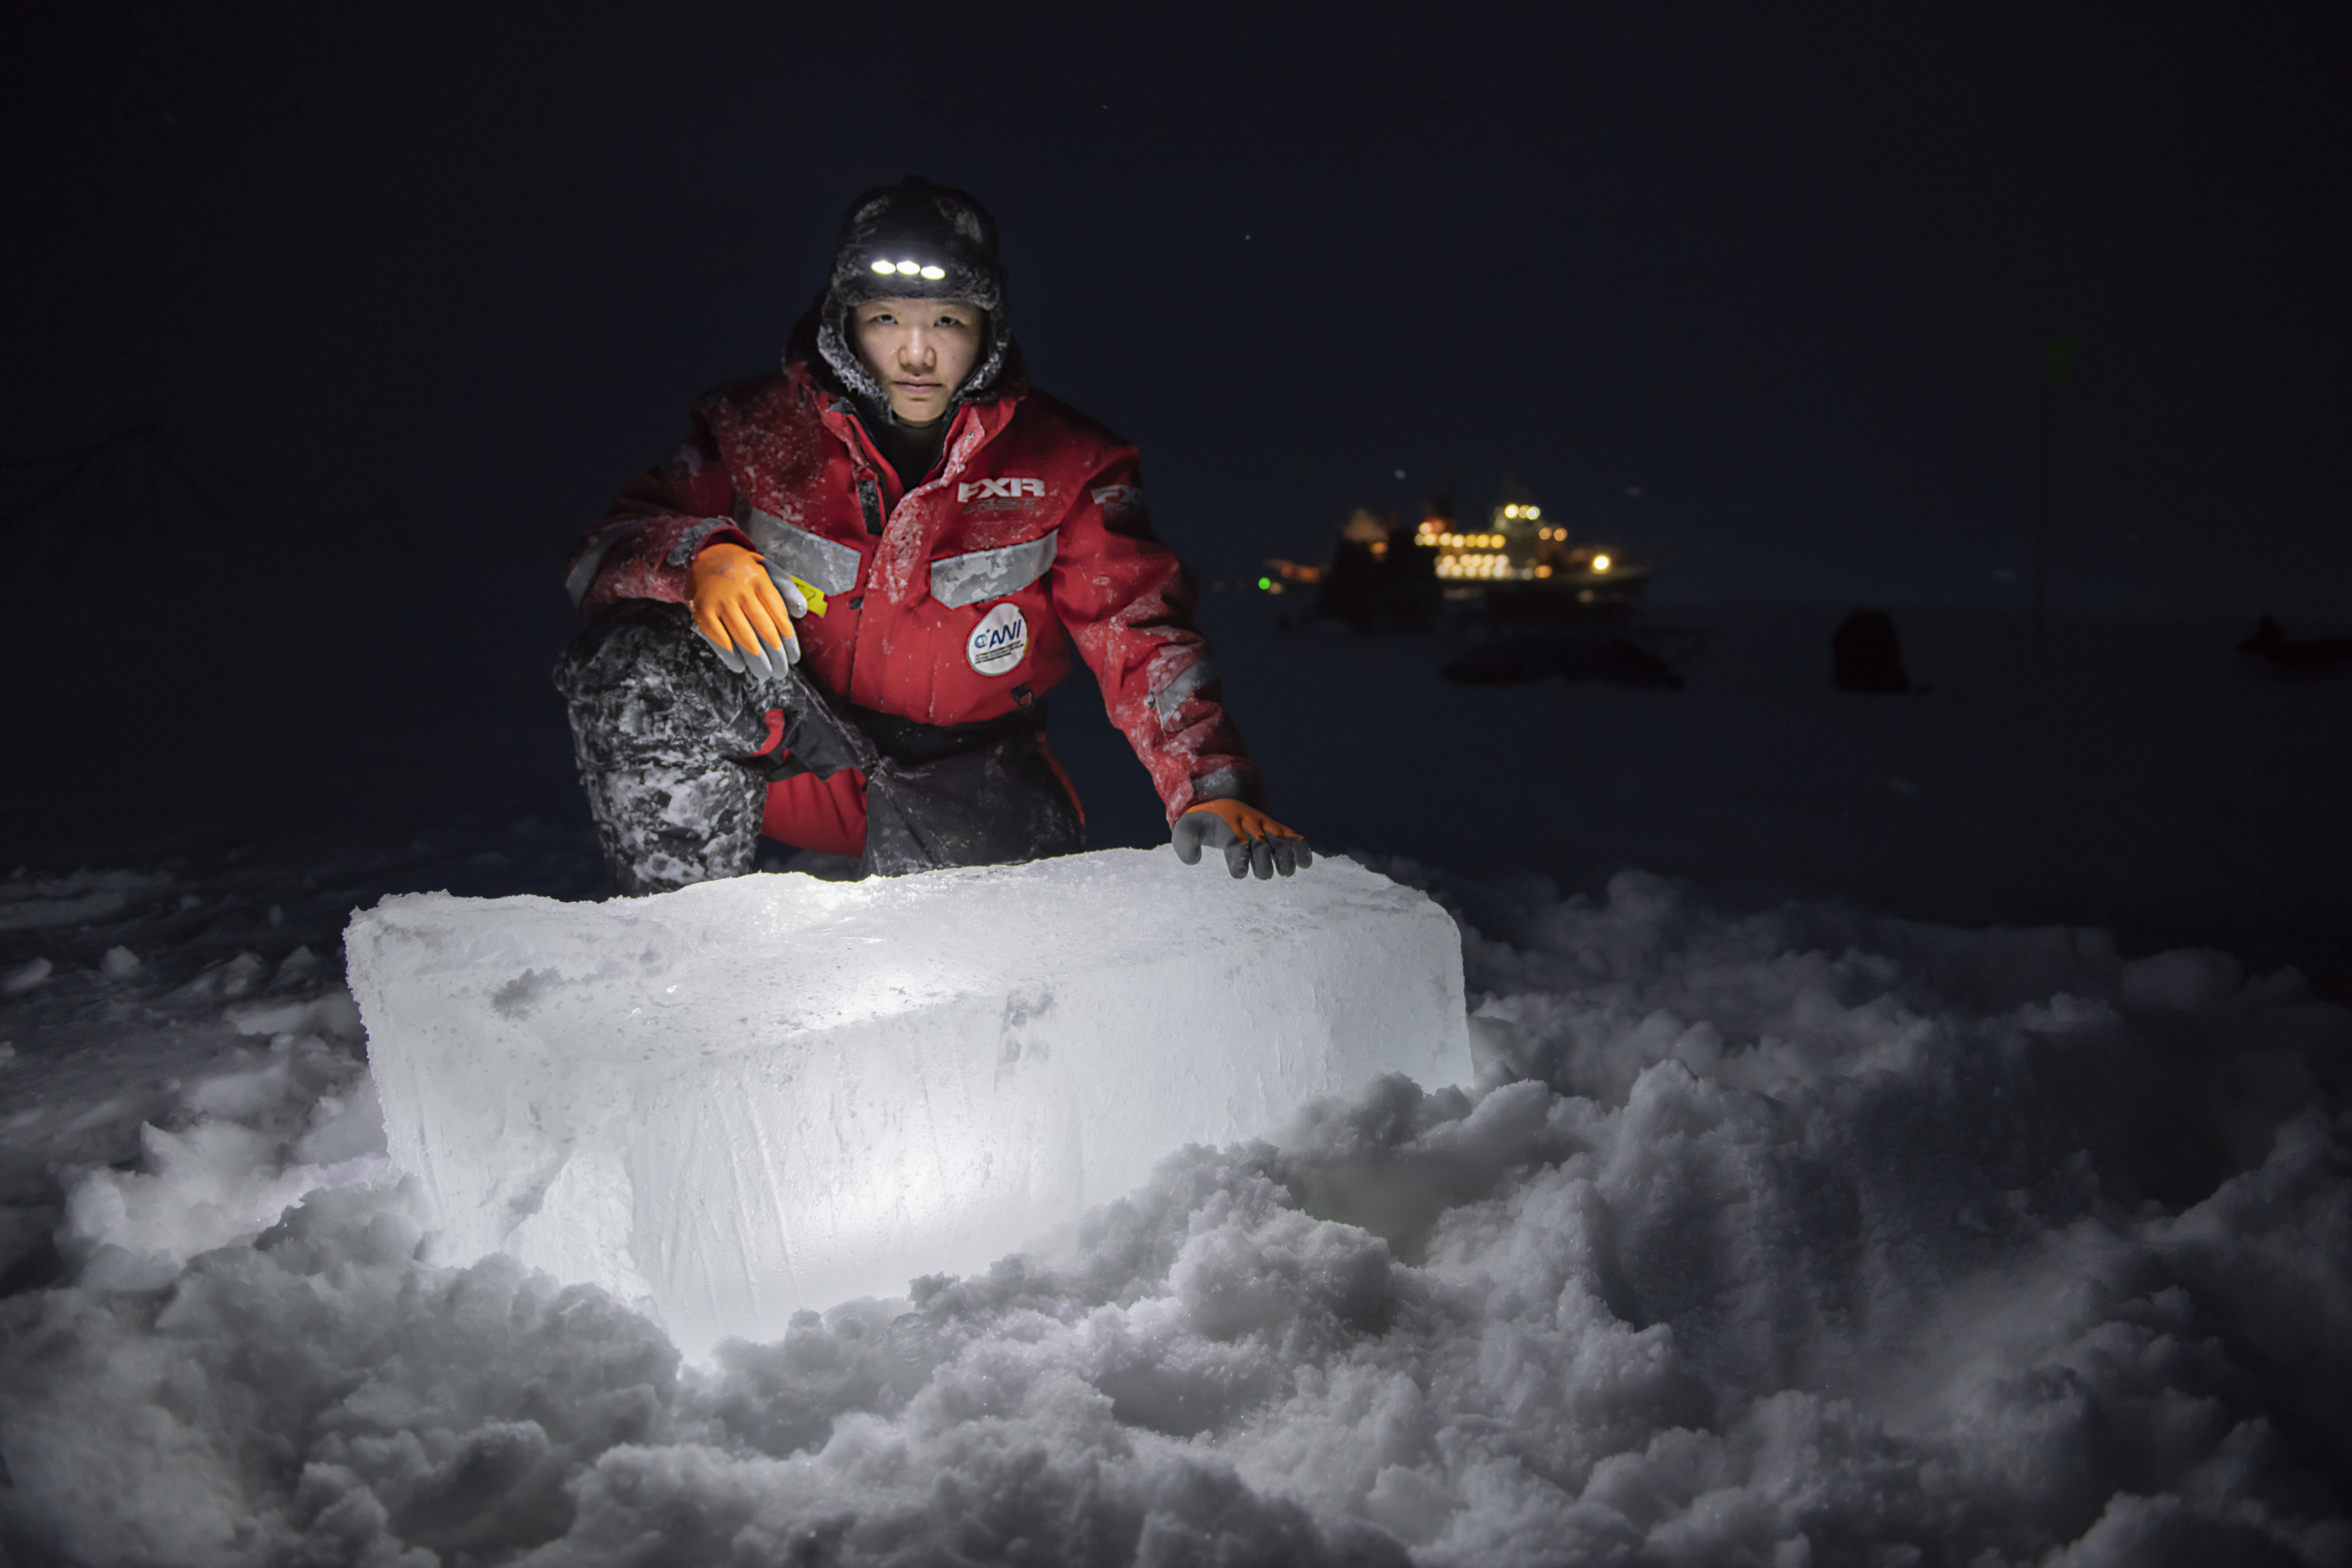 Forscherin Allison Fond vor einem Eisklotz in der Arktis bei Nacht. Das Forschungsschiff ist im Hintergrund zu sehen. Foto: Esther Horvath